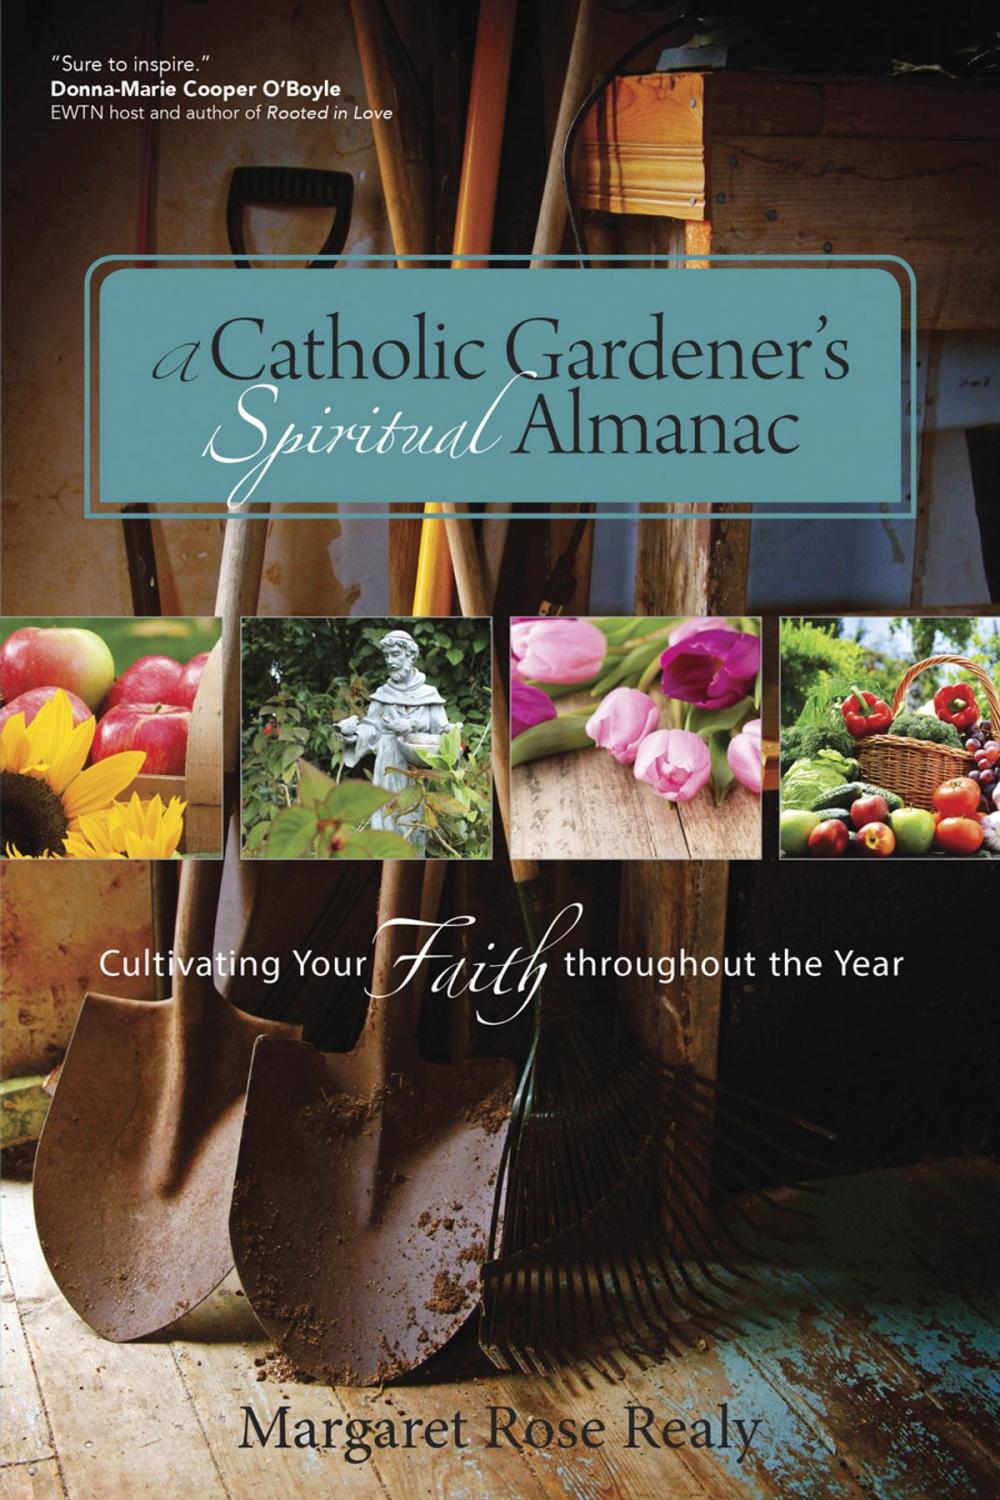 Big bigCover of A Catholic Gardener’s Spiritual Almanac